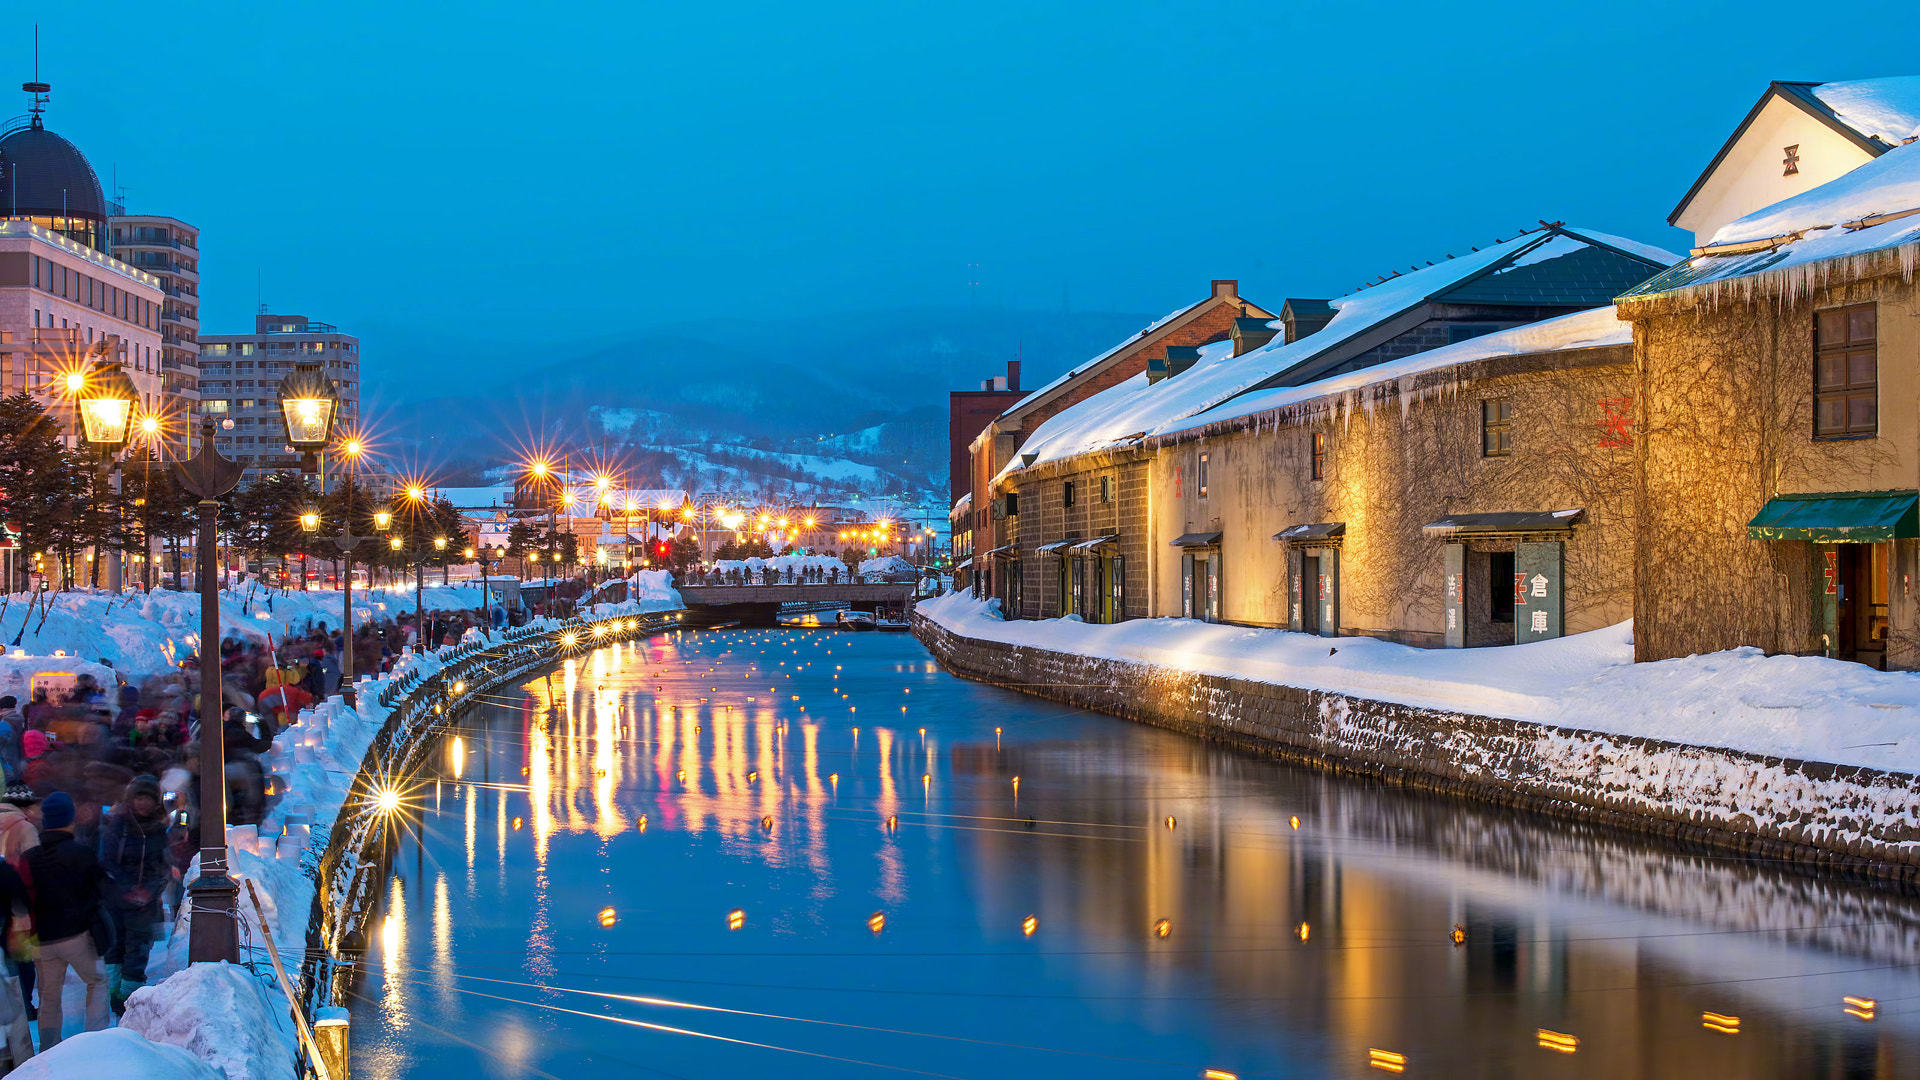 小樽运河是小樽乃至北海道的一大标志性景观,因电影《情书》而闻名